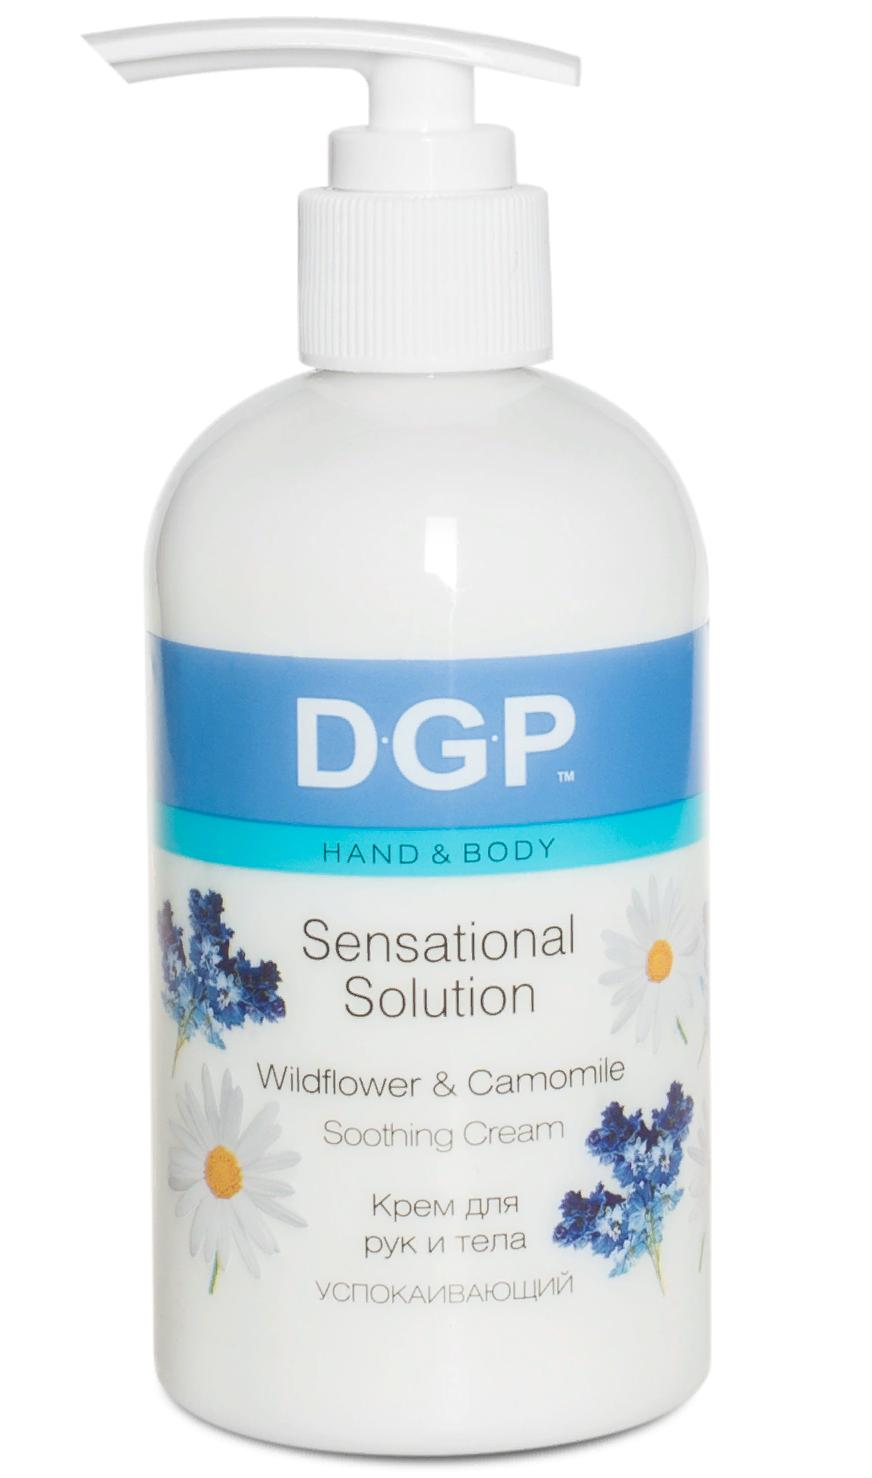 DOMIX Крем успокаивающий для рук и тела / Sensational Solution DGP 260 мл domix крем увлажняющий для рук и тела sensational solution dgp 260 мл